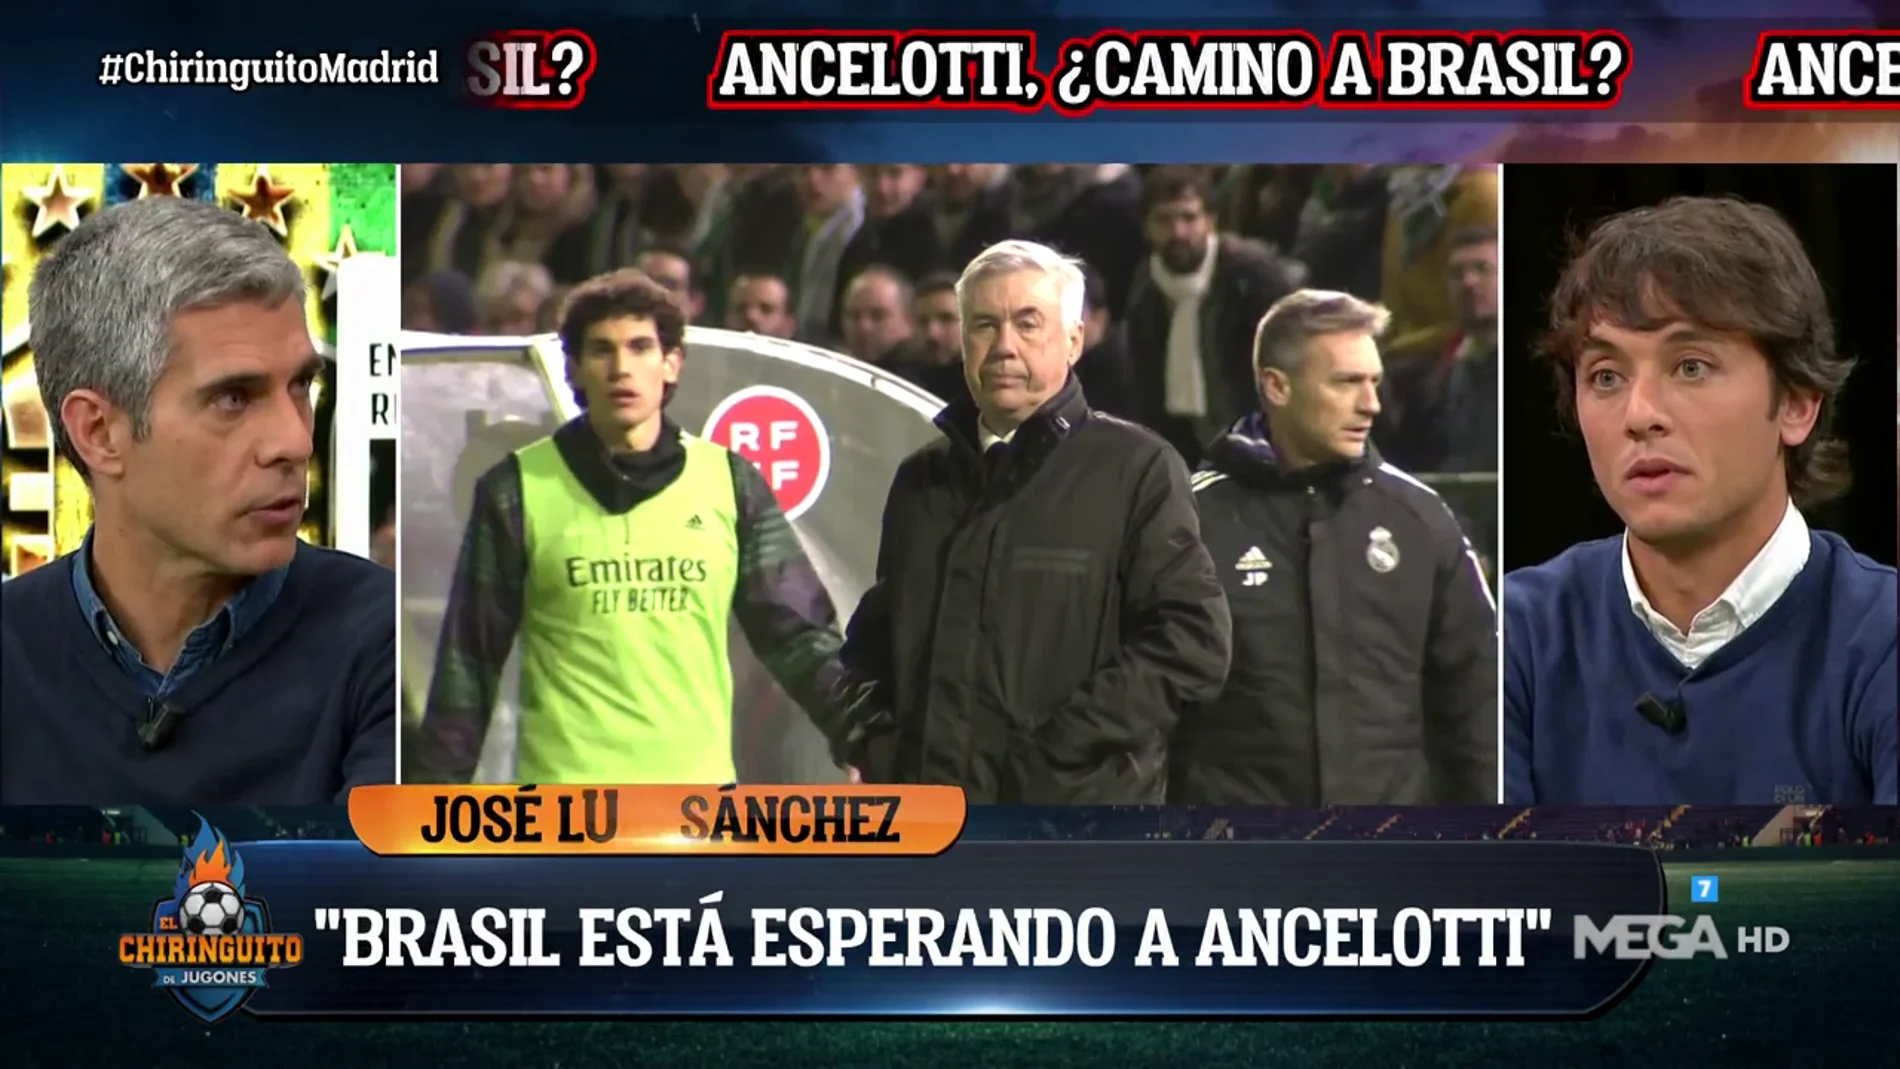 "Veo a Ancelotti muy feliz cuando habla de Brasil"